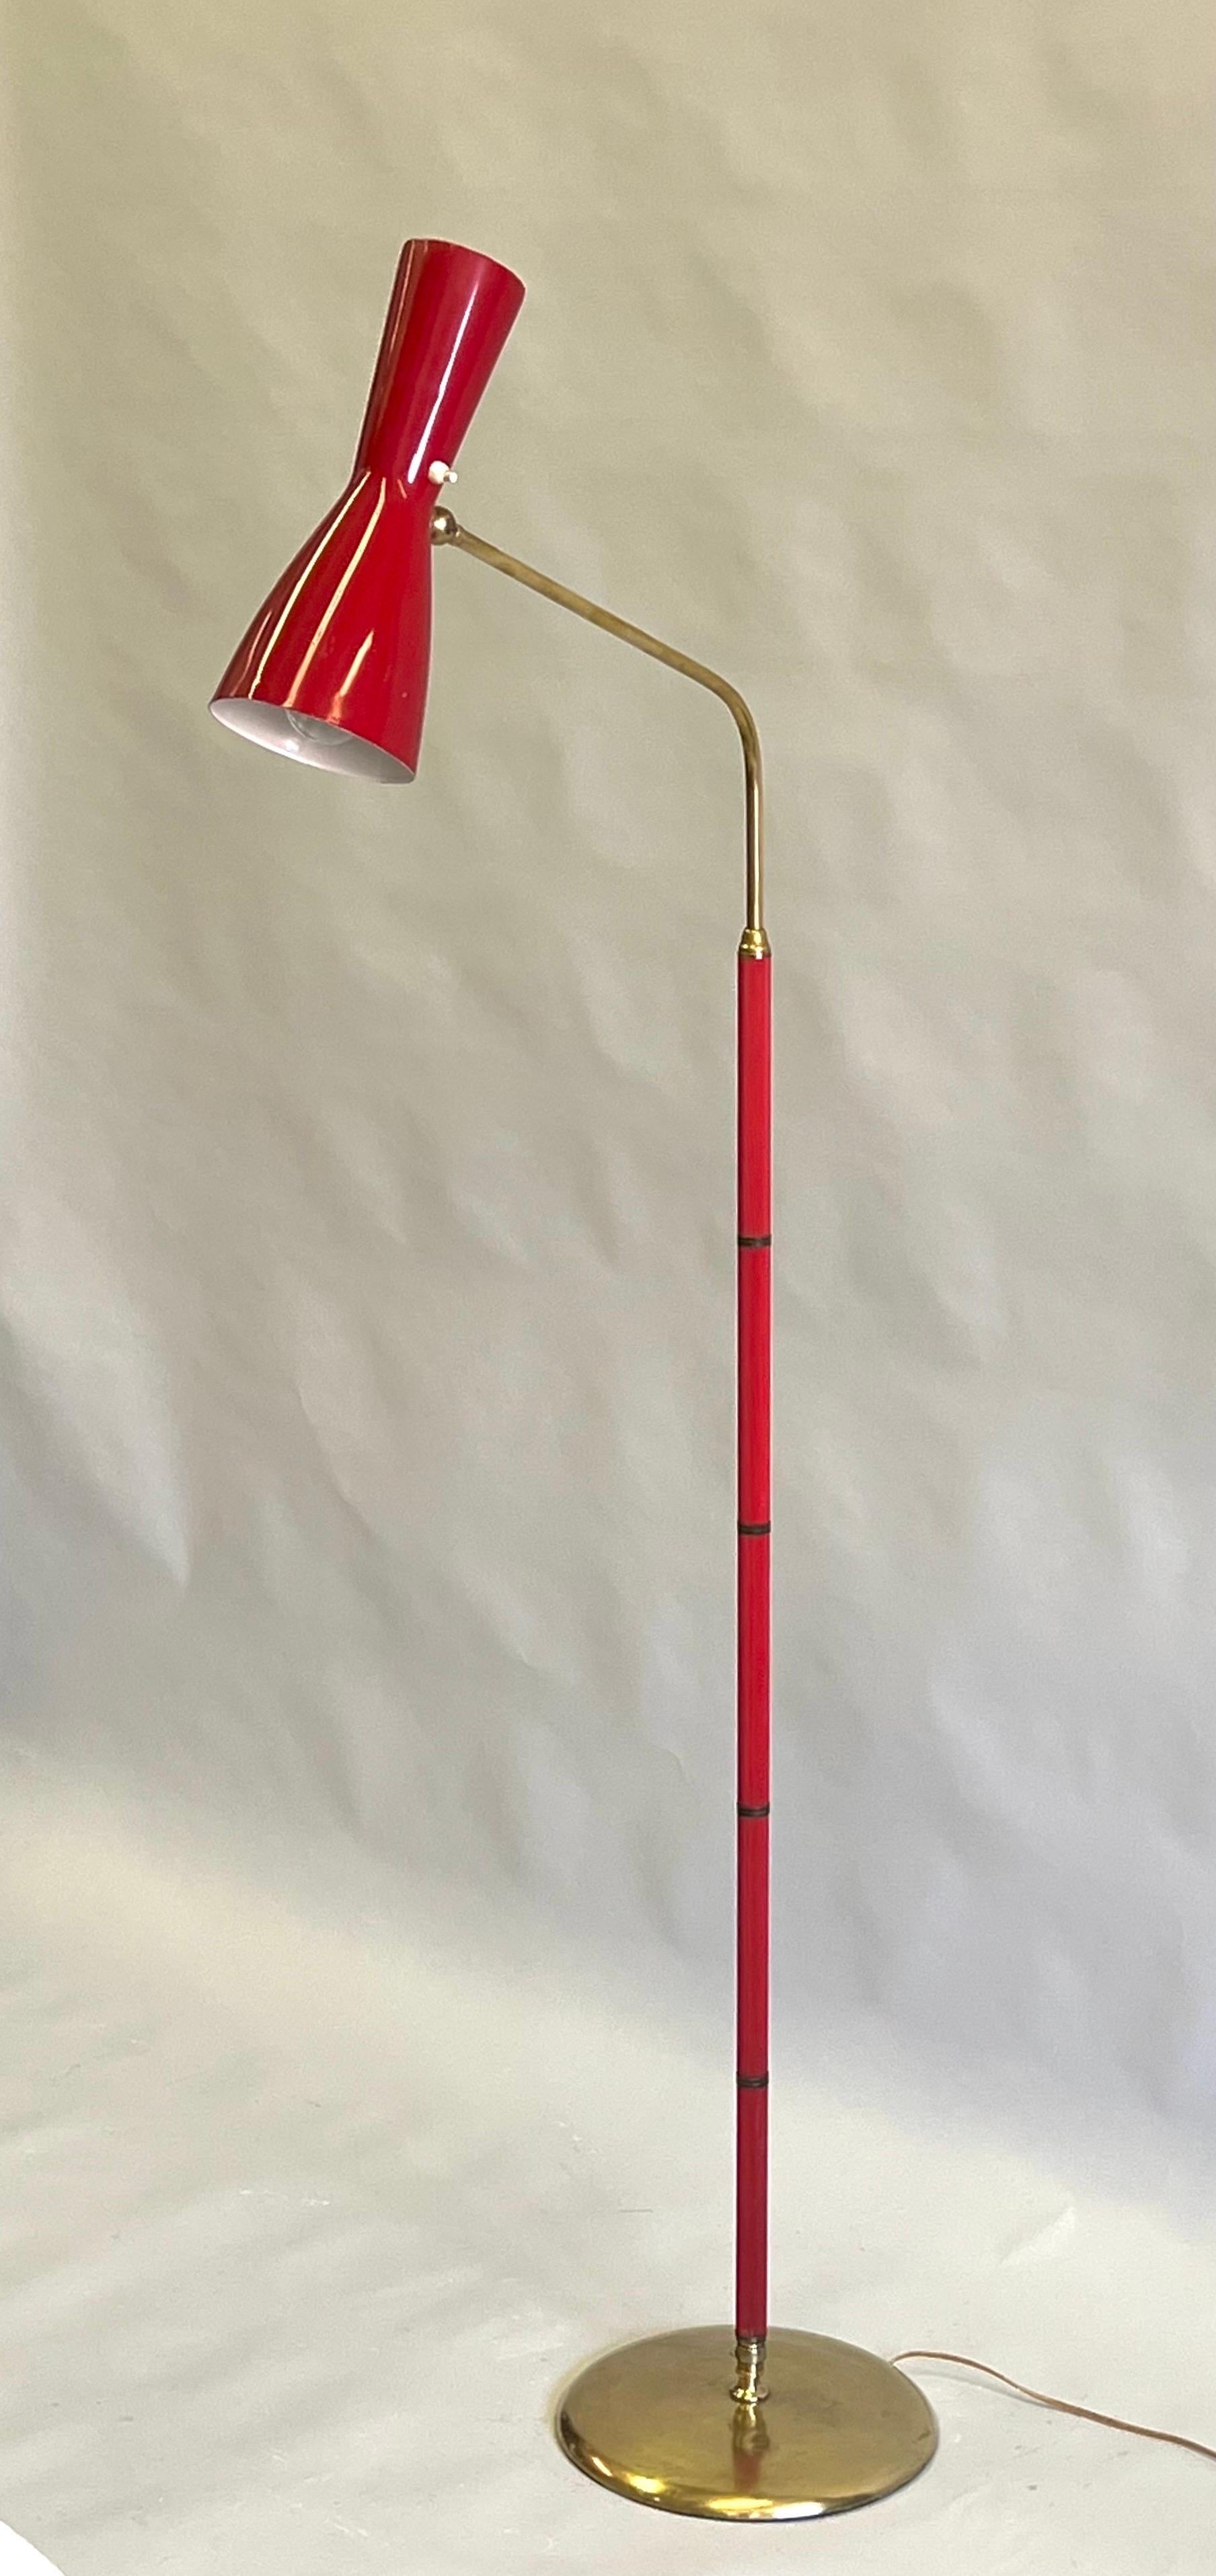 Rare lampadaire articulé italien du milieu du siècle en métal émaillé rouge, caoutchouc synthétique rouge et laiton attribué à Vittoriano Vigano pour le cabinet de design Arteluce. Il s'agit d'une œuvre fonctionnelle et spectaculaire de l'ingénierie